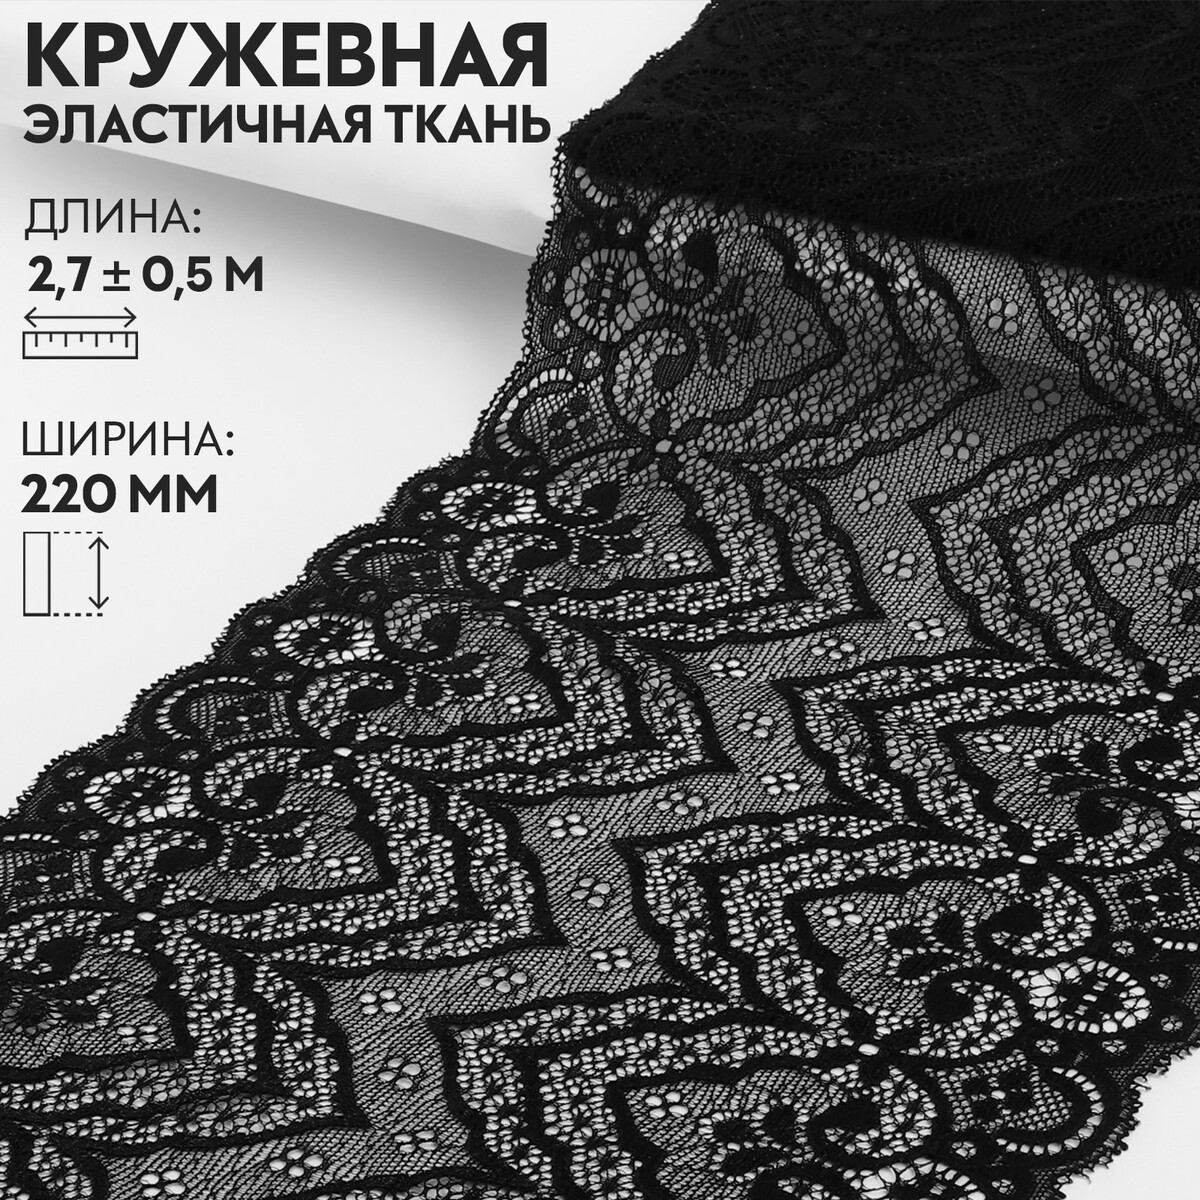 Кружевная эластичная ткань, 220 мм × 2,7 ± 0,5 м, цвет черный